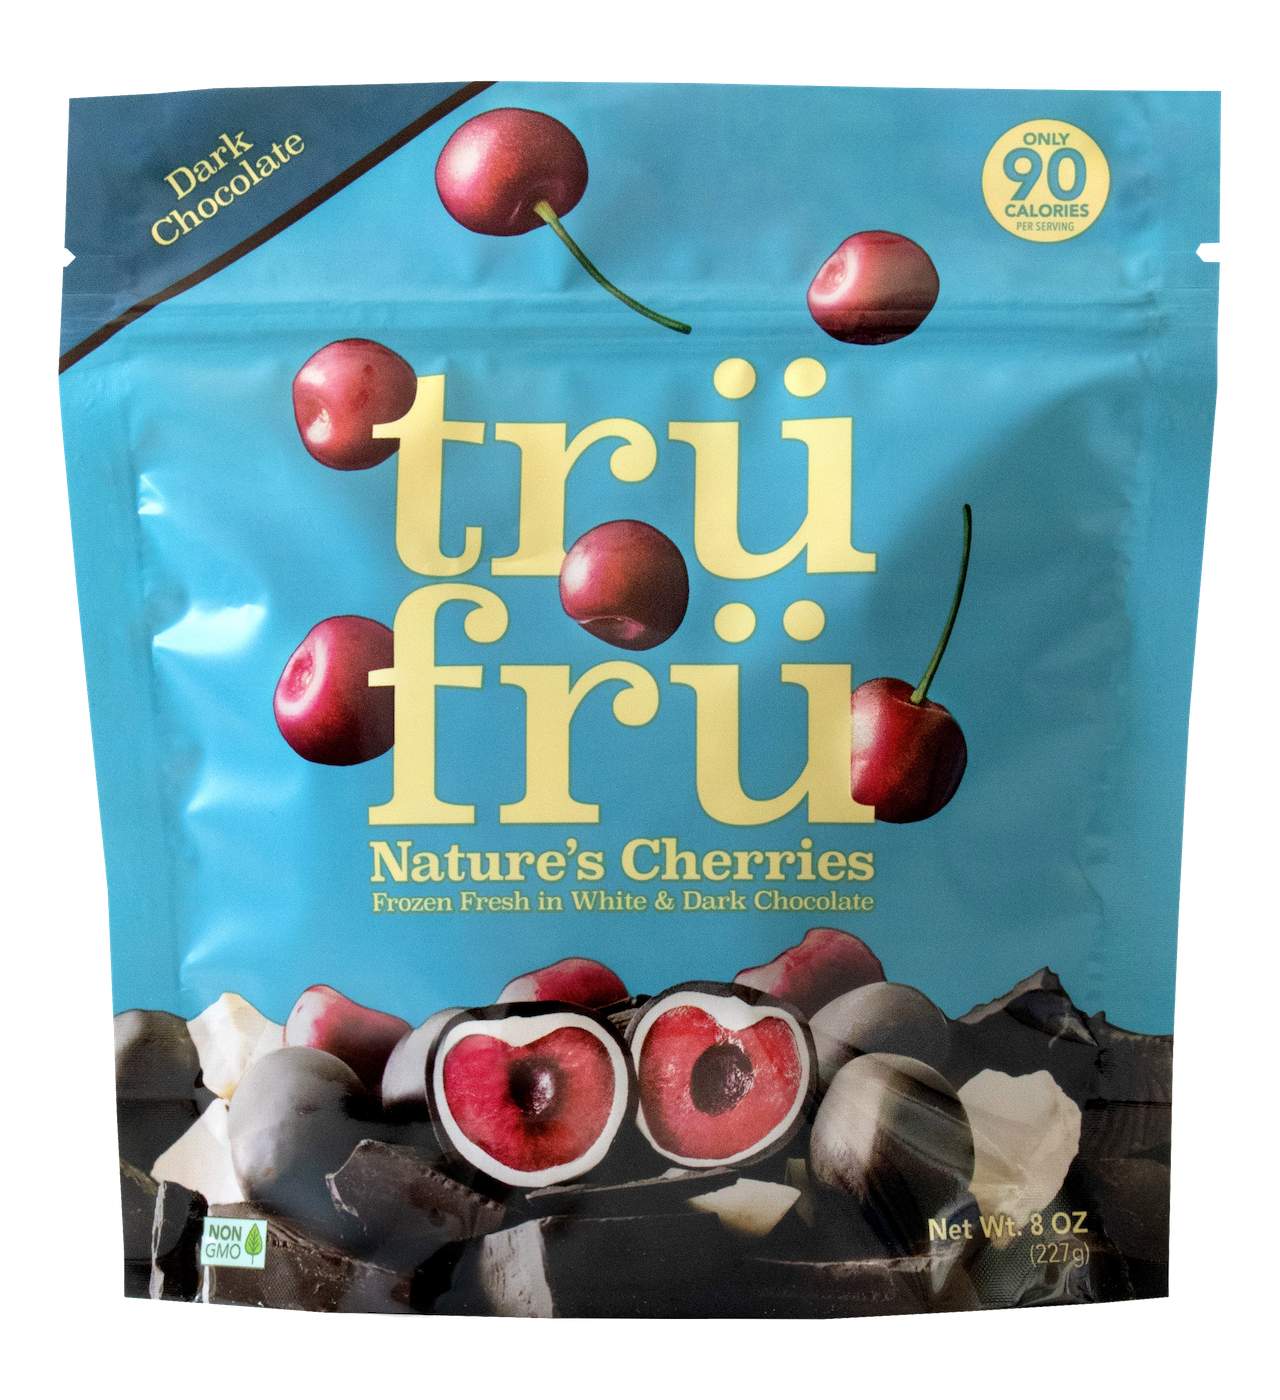 Tru Fru Nature's Cherries Frozen Fresh in White Dark & Chocolate; image 1 of 2